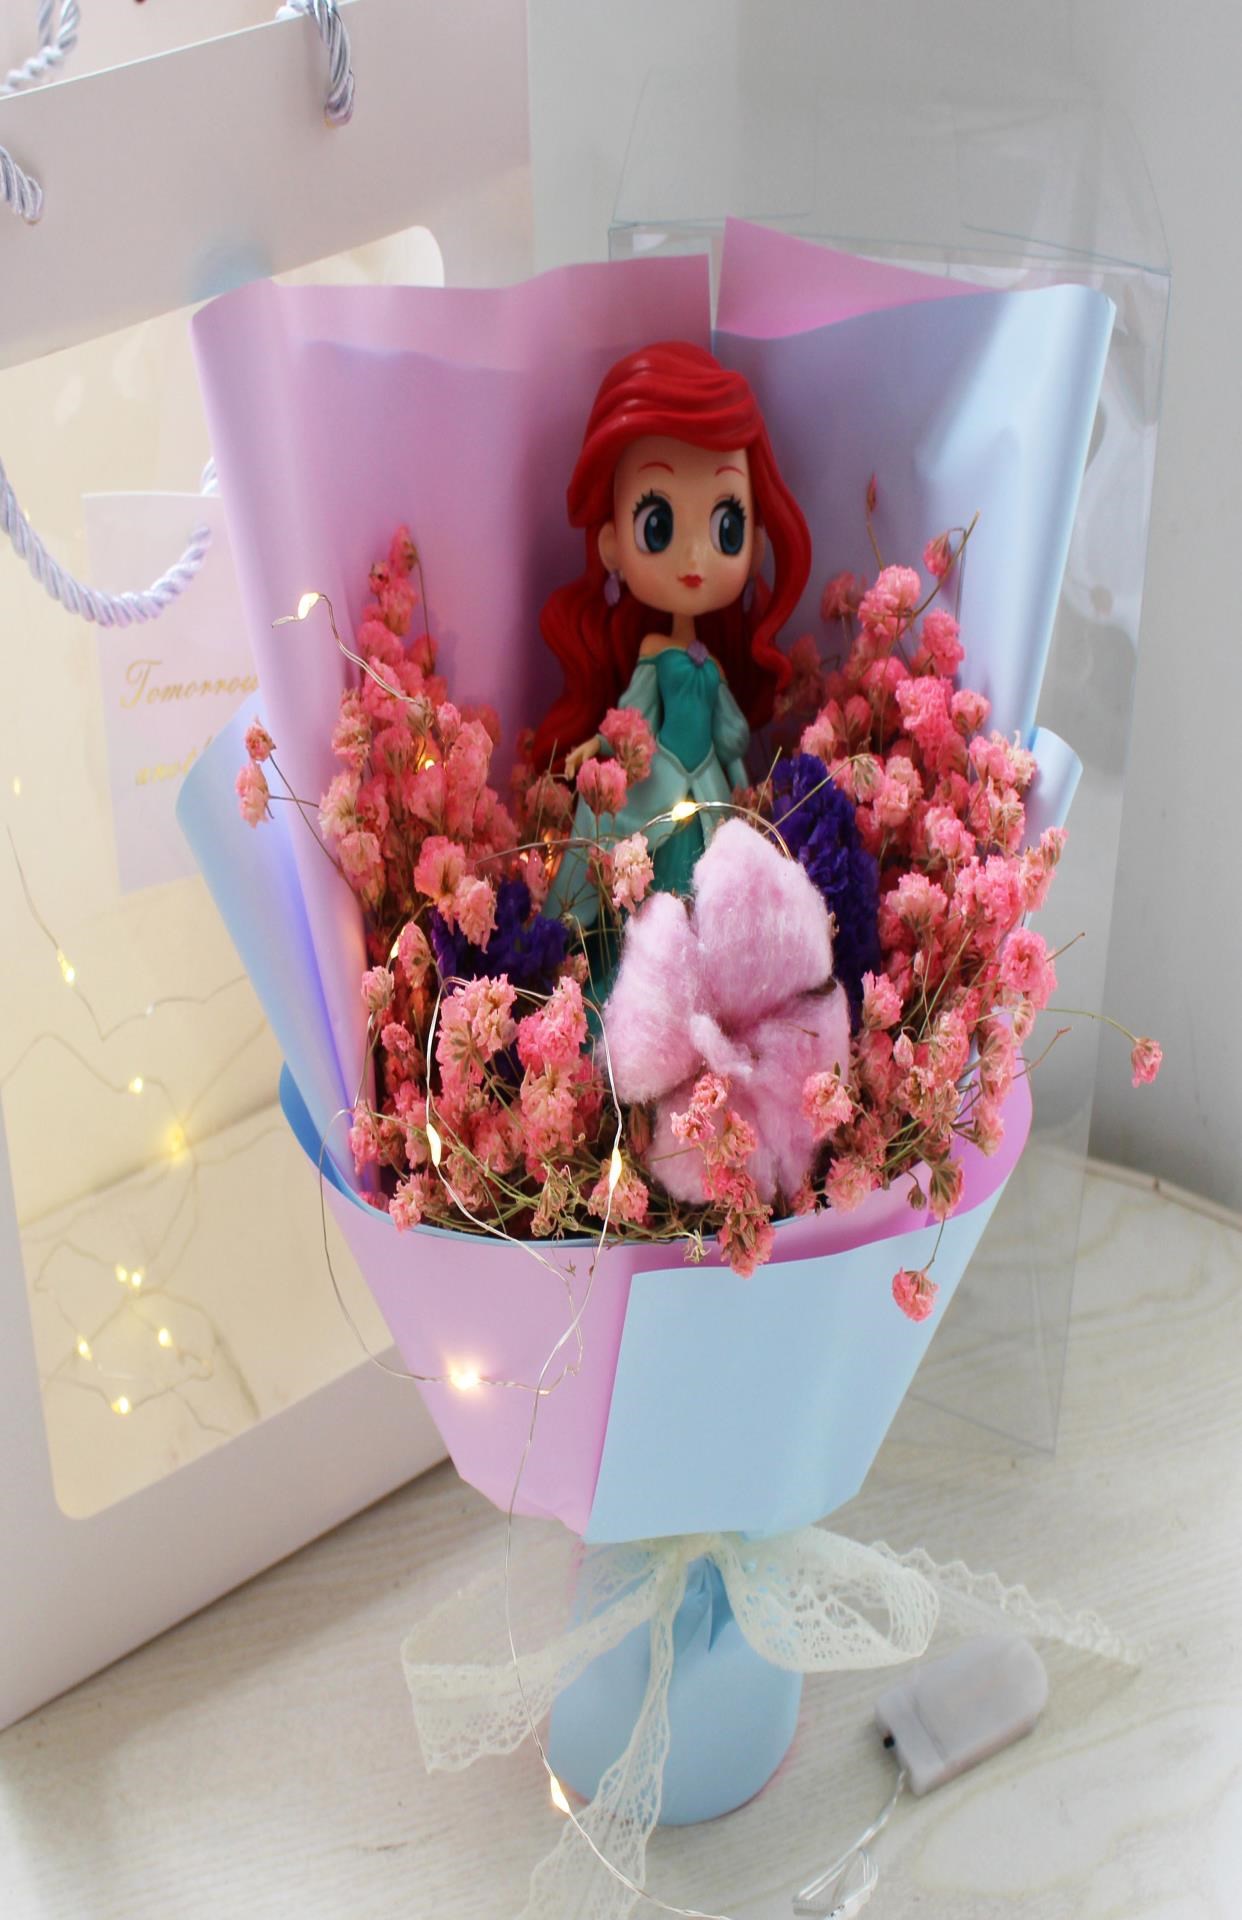 Bó hoa dành cho trẻ em Bạch tuyết Nàng tiên cá Bó hoa hoạt hình cho bạn gái Bé gái ngày lễ tình nhân Quà tặng sinh nhật - Hoa hoạt hình / Hoa sô cô la